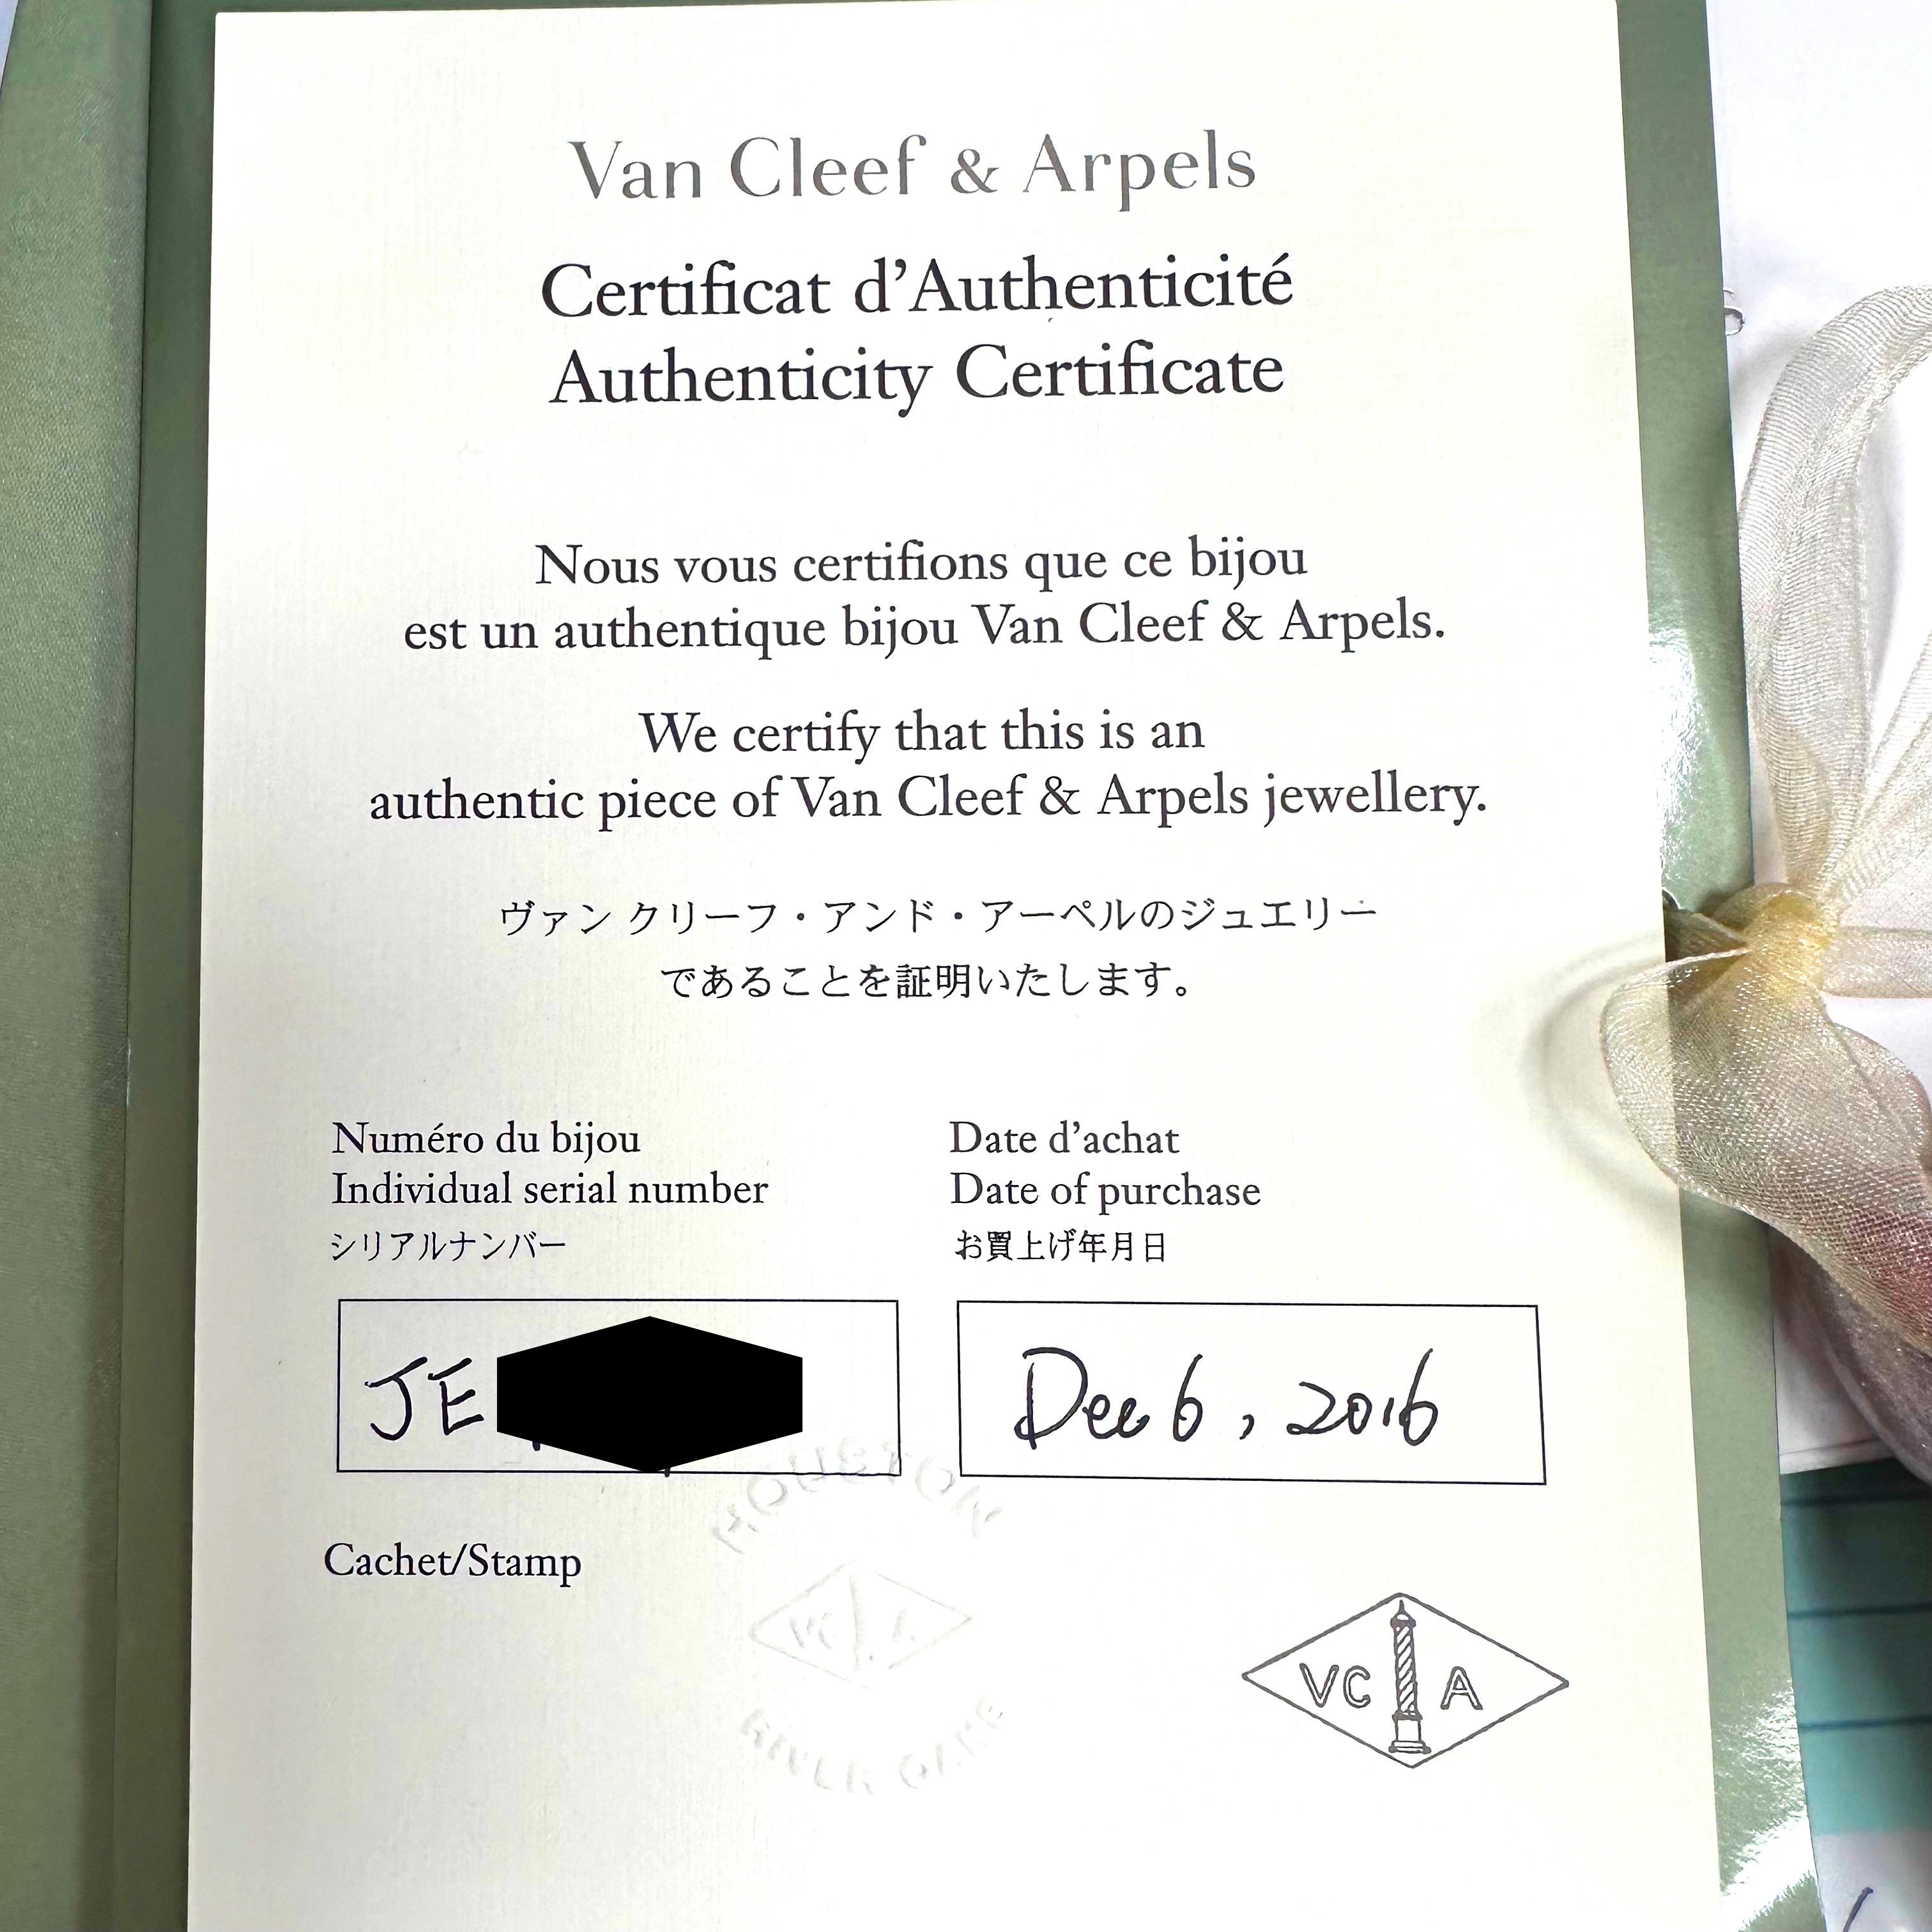 van cleef certificate of authenticity